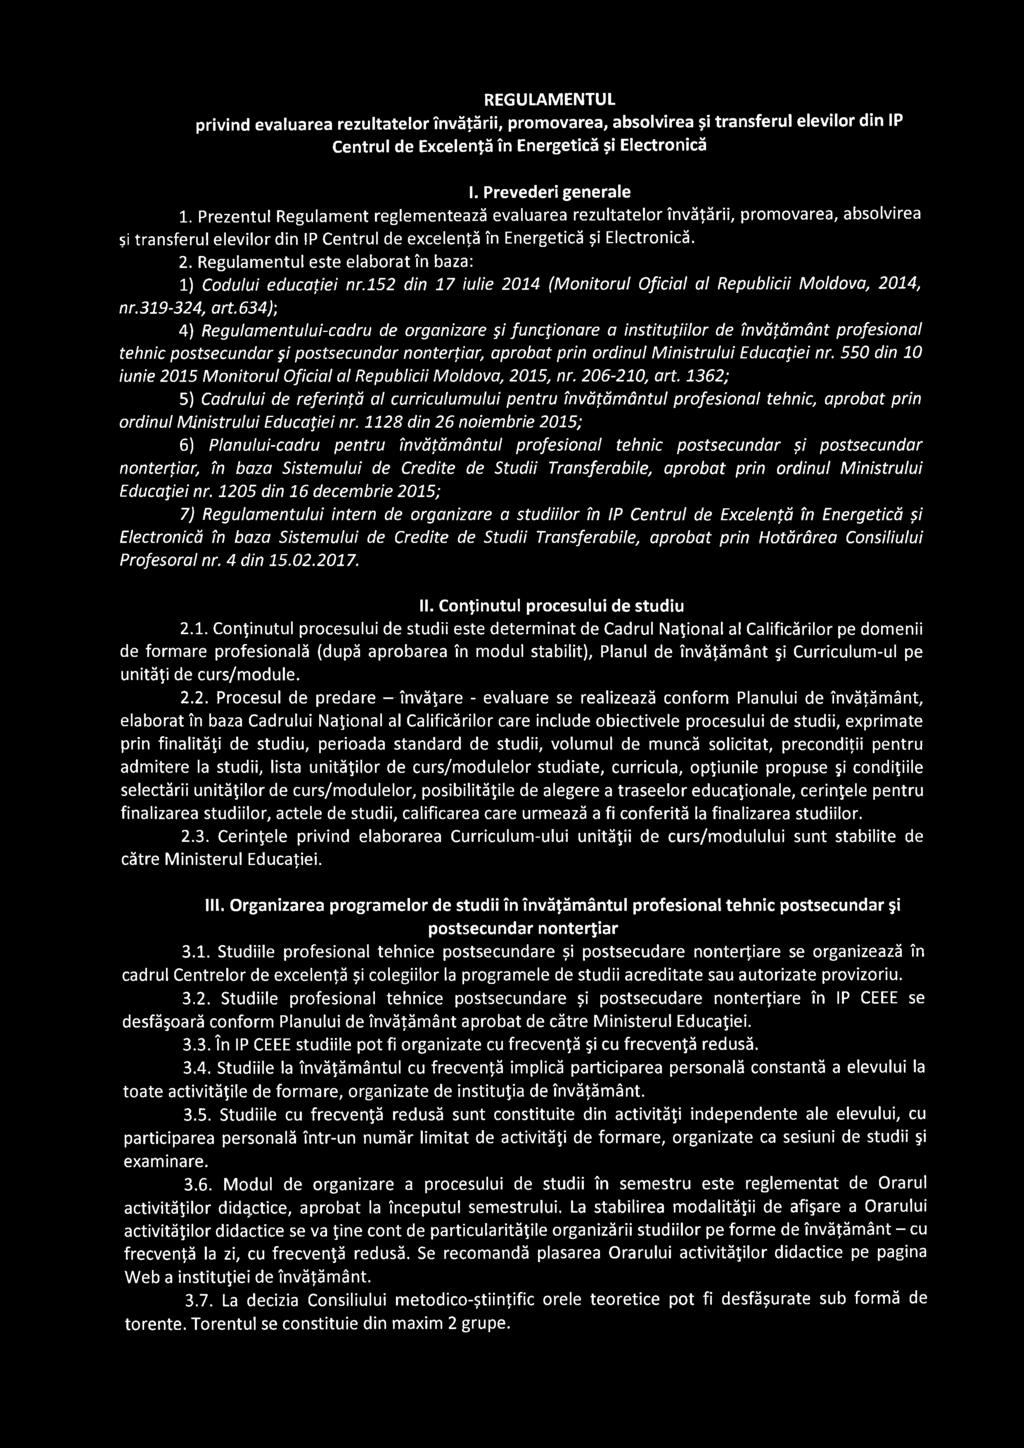 Regulamentul este elaborat în baza: 1) Codului educaţiei nr.152 din 17 iulie 2014 (Monitorul Oficial al Republicii Moldova, 2014, nr.319-324, art.